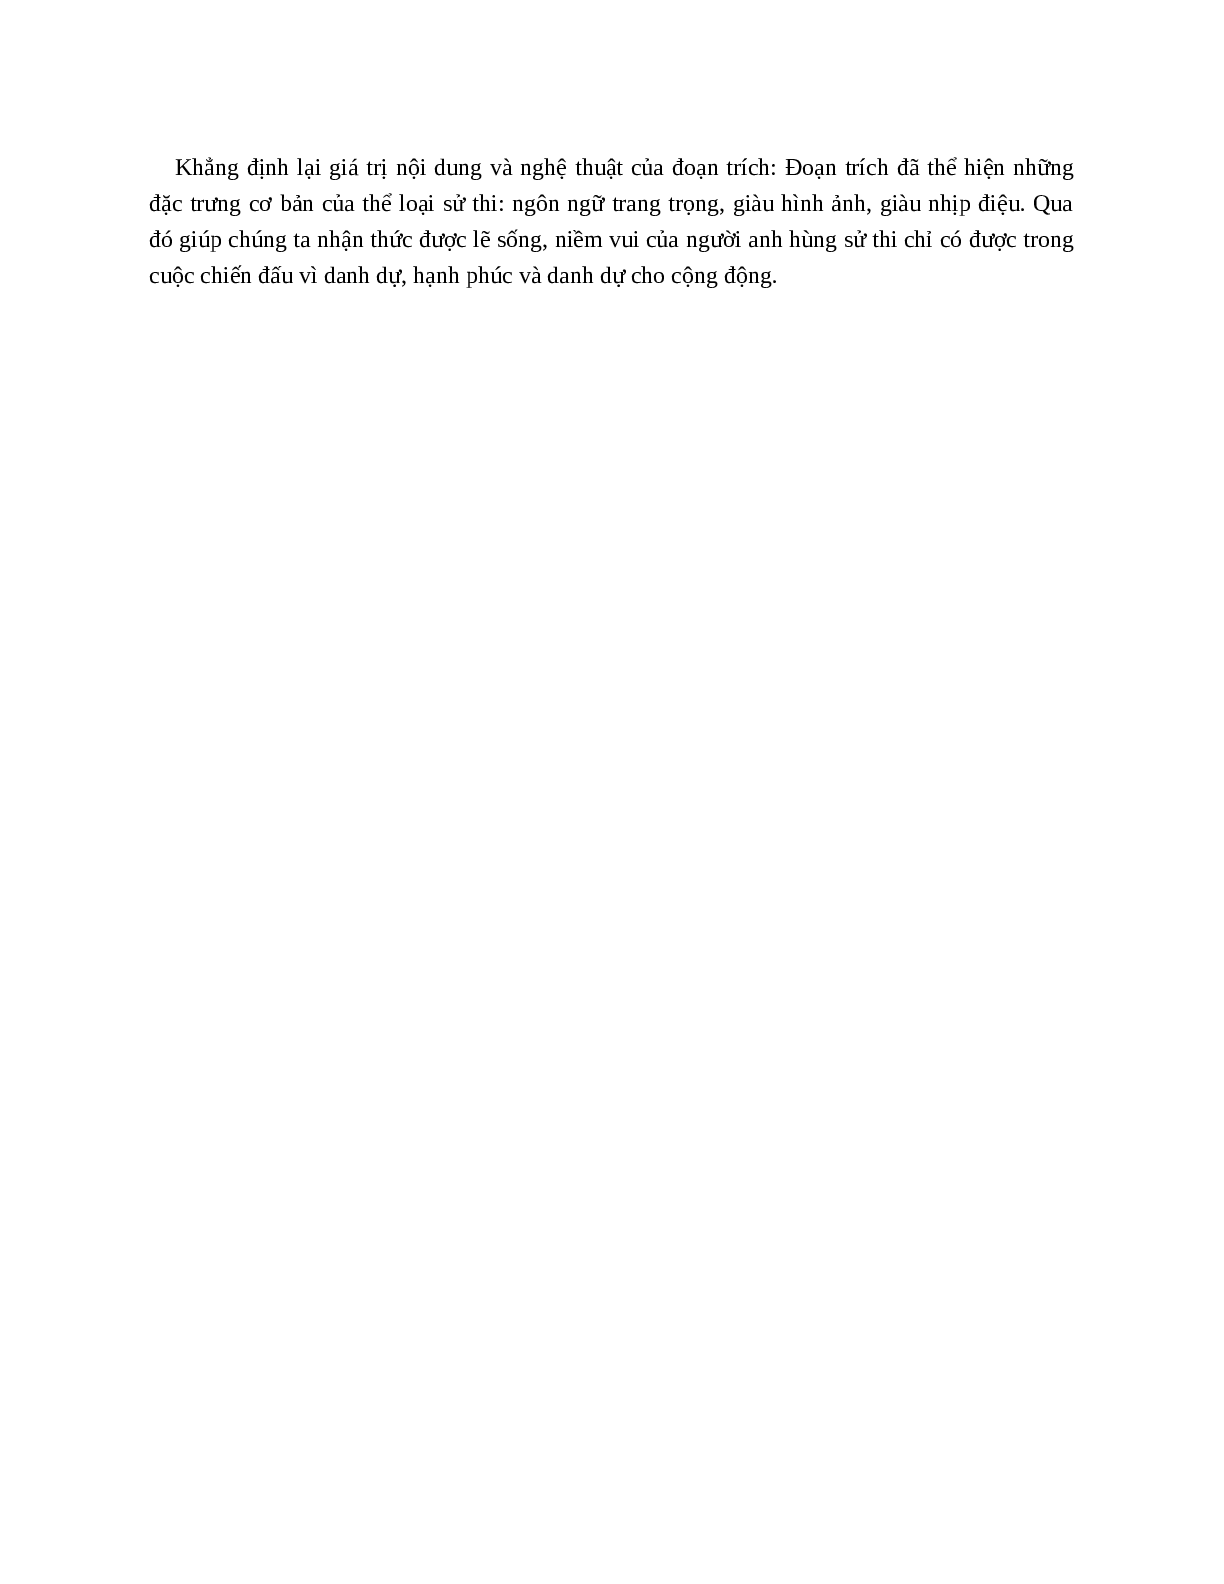 Chiến thắng Mtao Mxây – nội dung, dàn ý phân tích, bố cục, tóm tắt (trang 5)